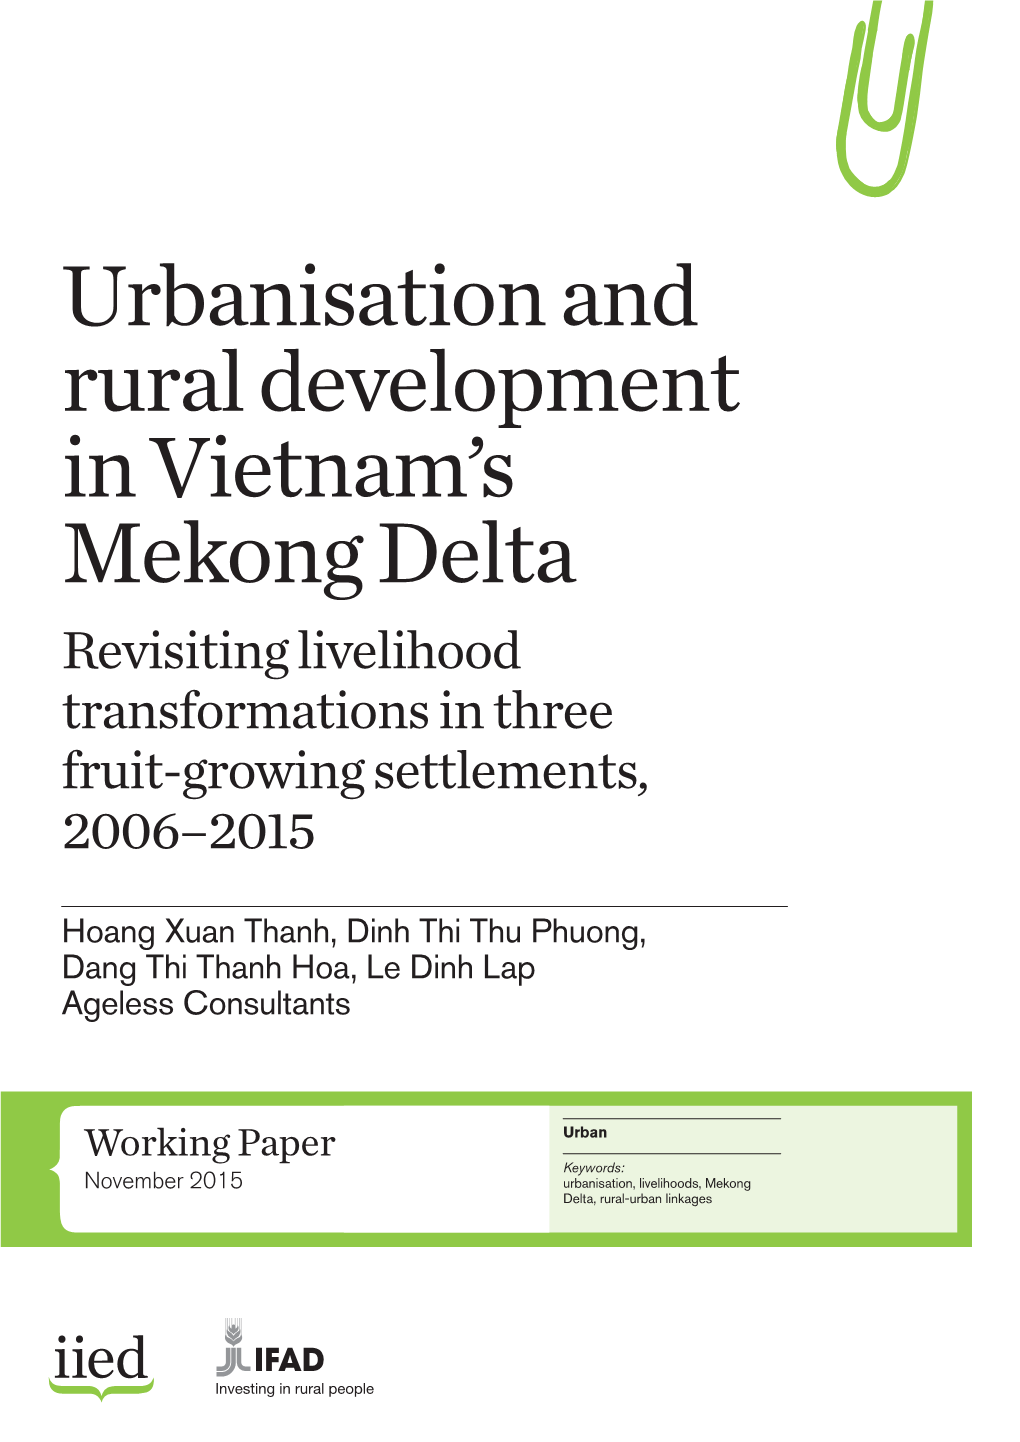 Urbanisation and Rural Development in Vietnam's Mekong Delta